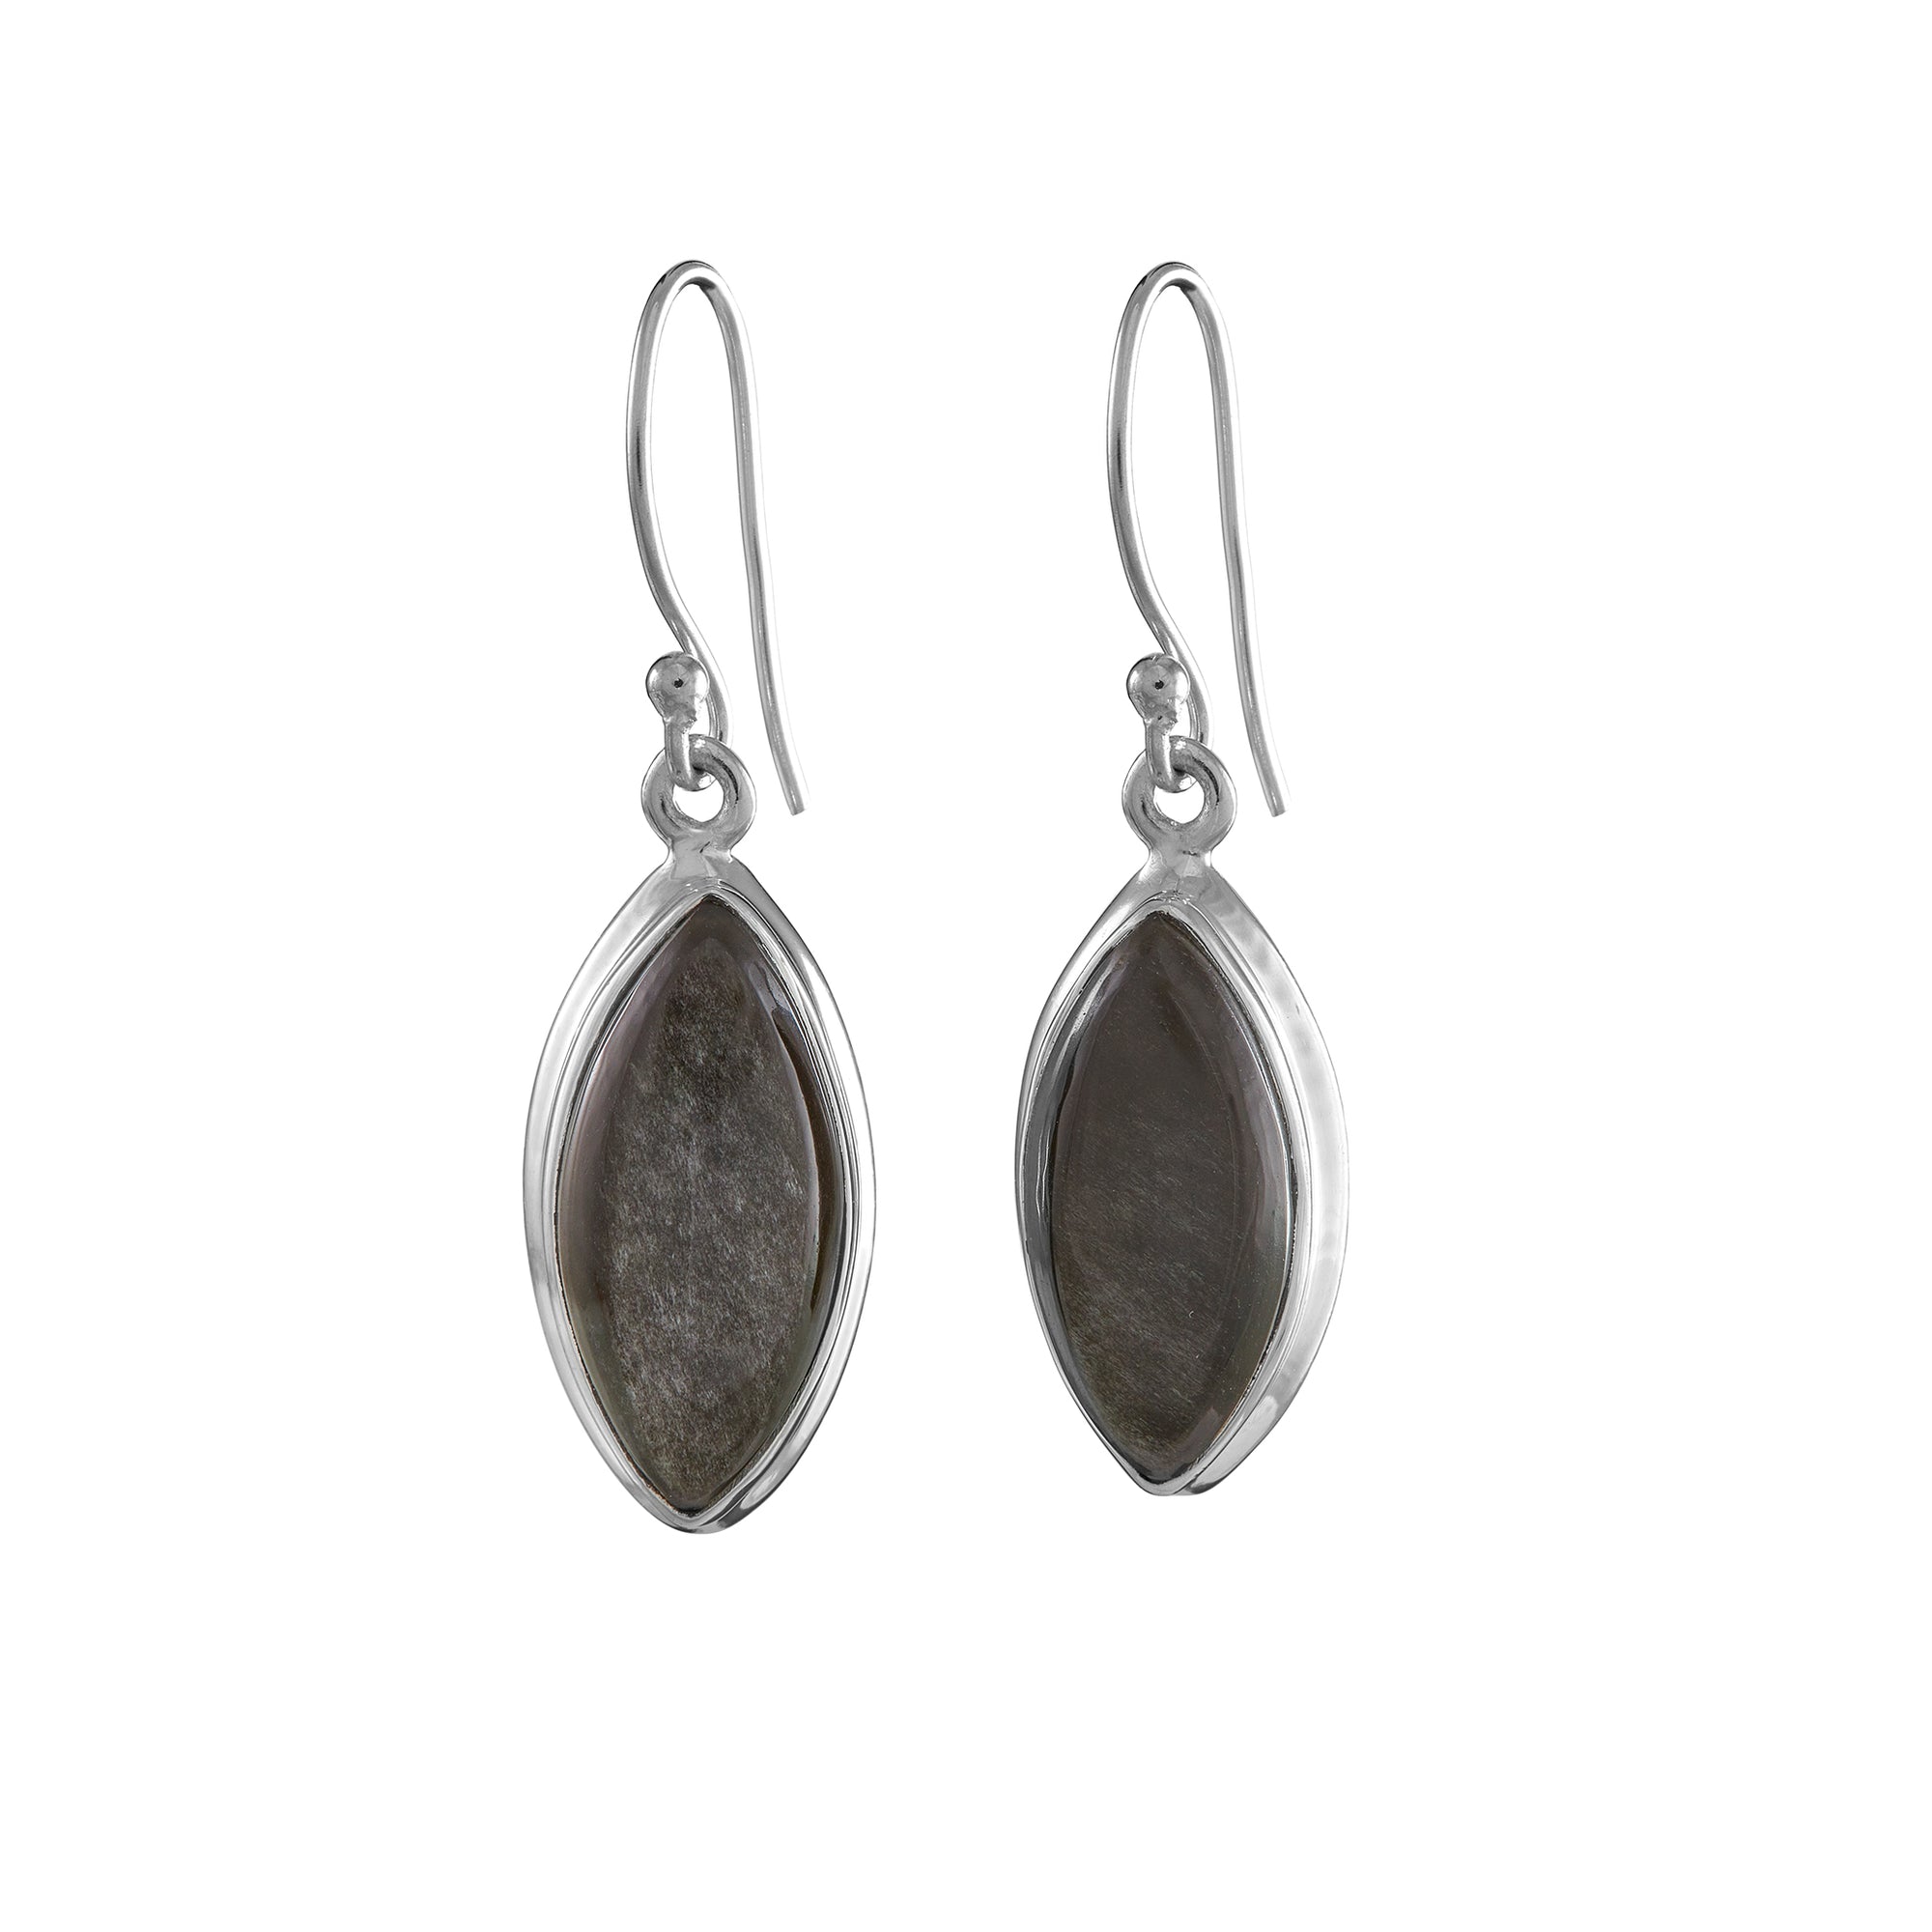 Silver sheen obsidian earrings